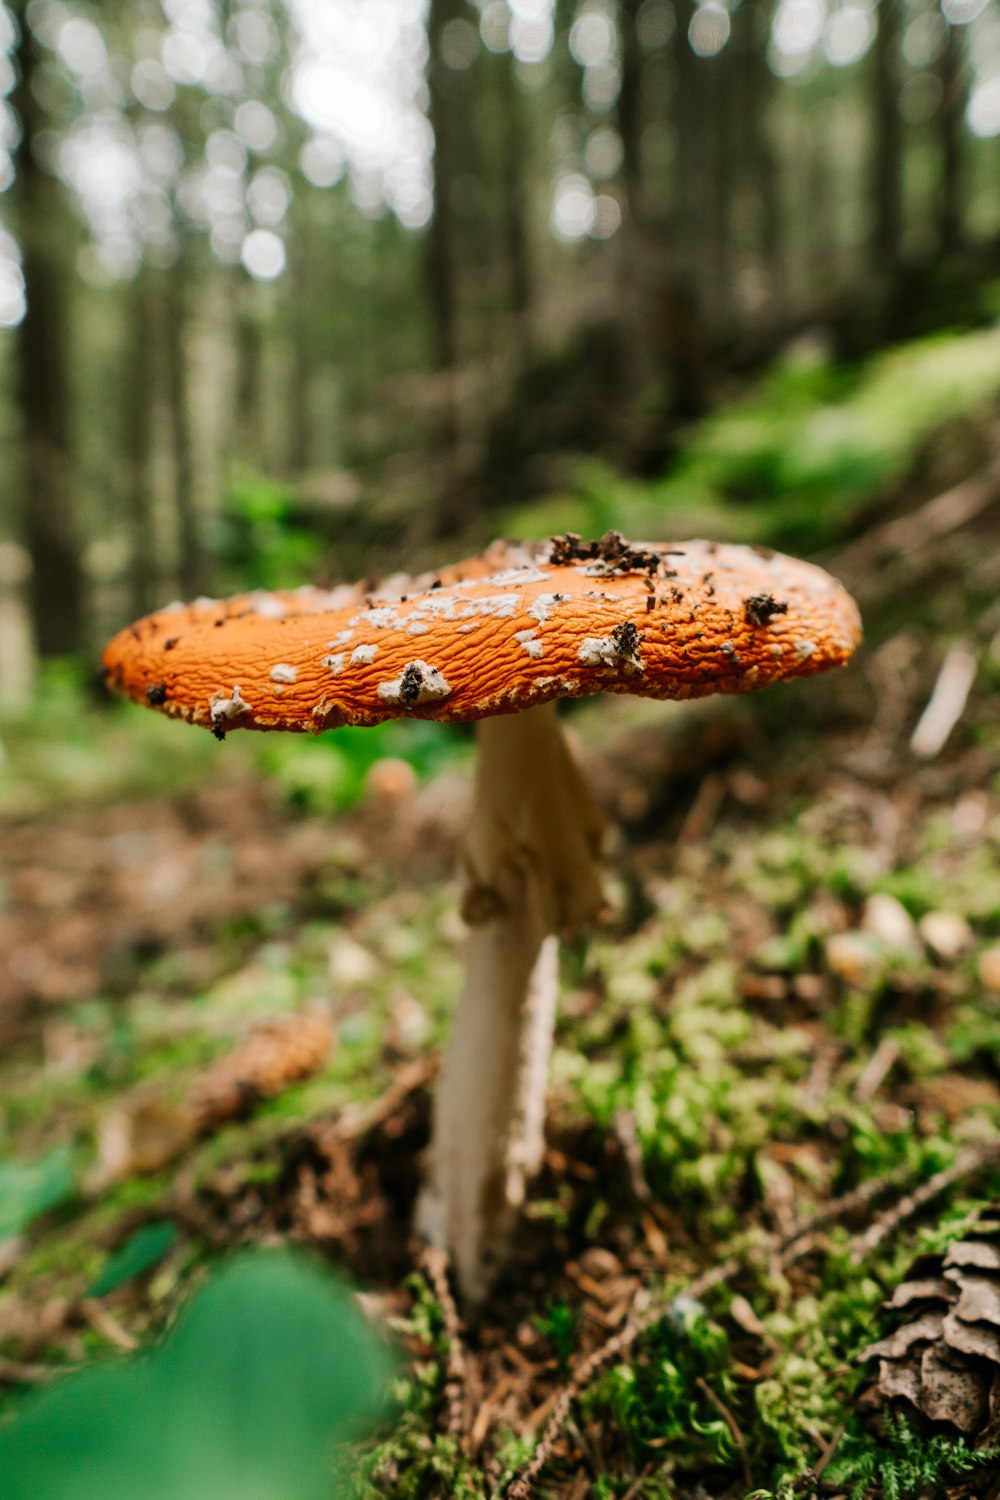 brown and white mushroom in tilt shift lens